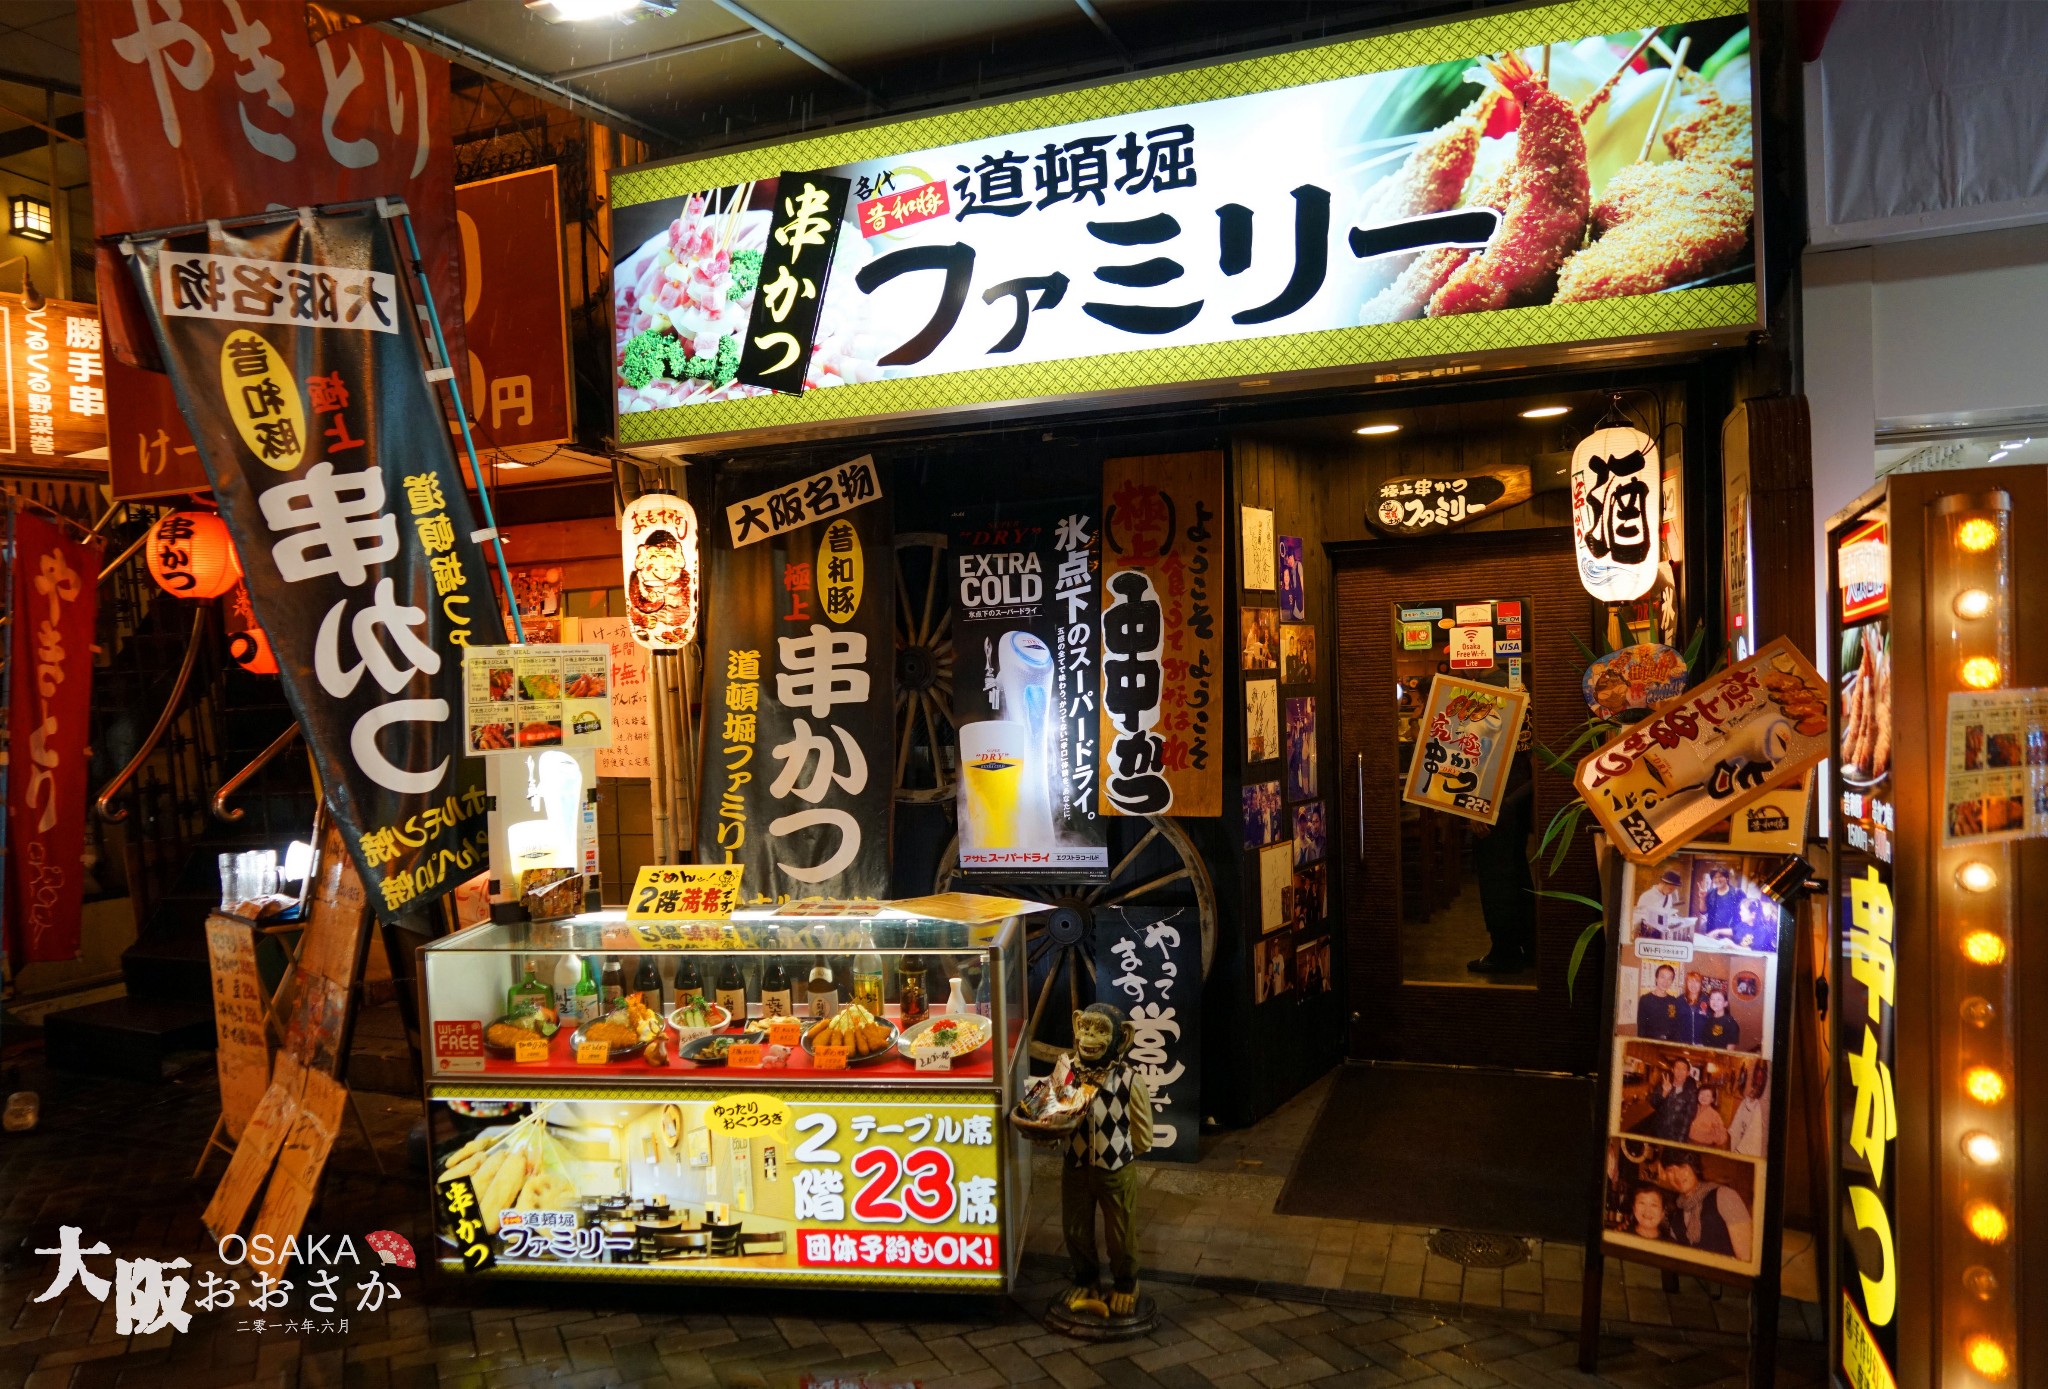 日本和风之旅 漫游大阪五日记实 Usj 美食 购物 奥莱 日本游记 途牛